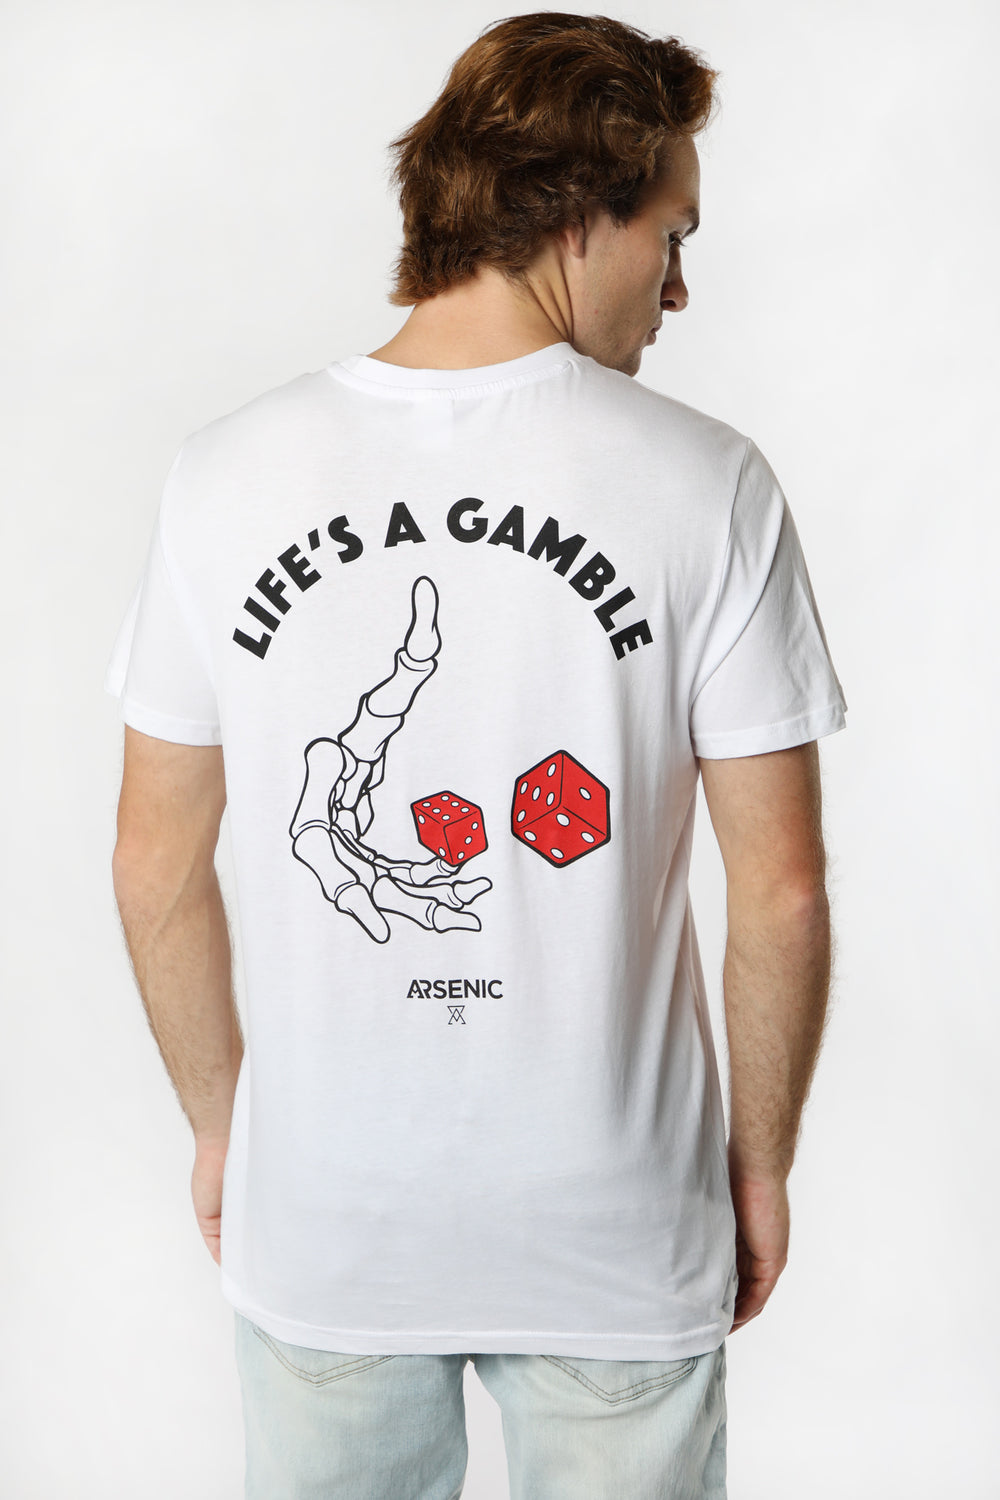 T-Shirt Imprimé Life's A Gamble Arsenic Homme T-Shirt Imprimé Life's A Gamble Arsenic Homme